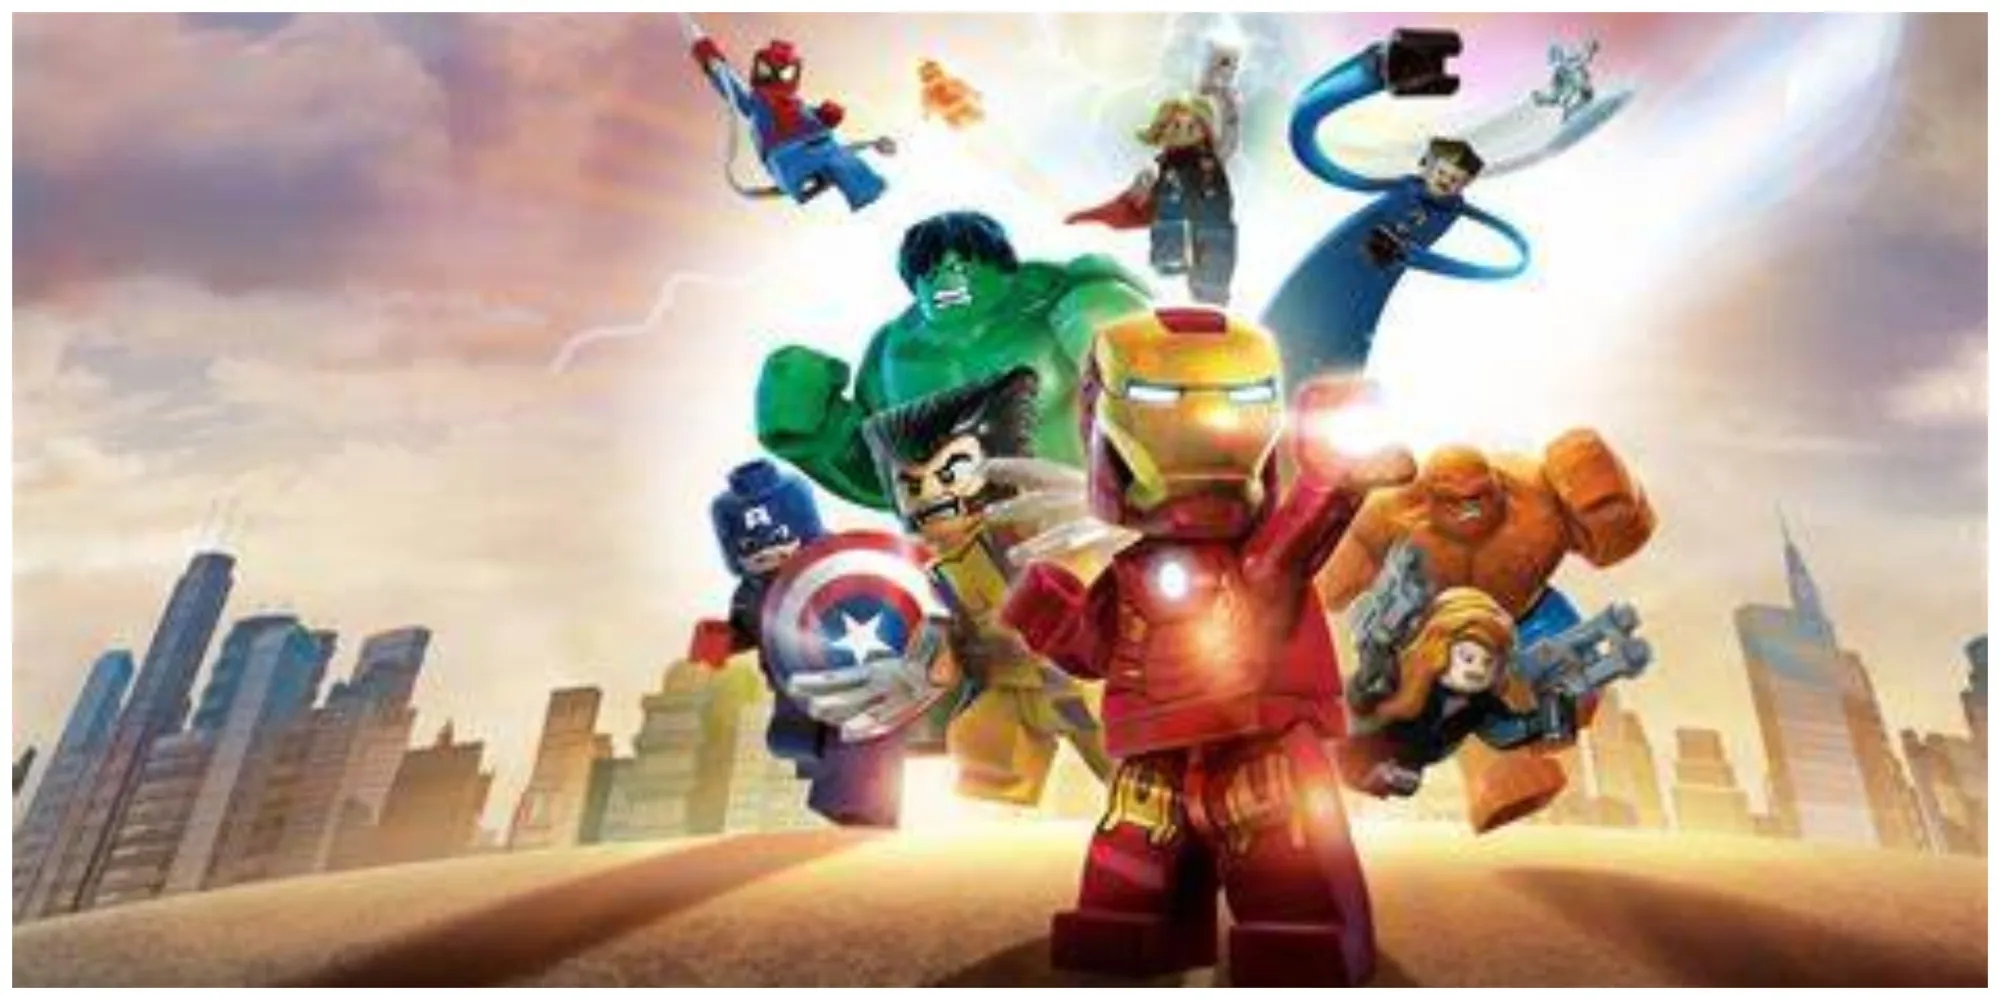 Lego Marvel Superheroes